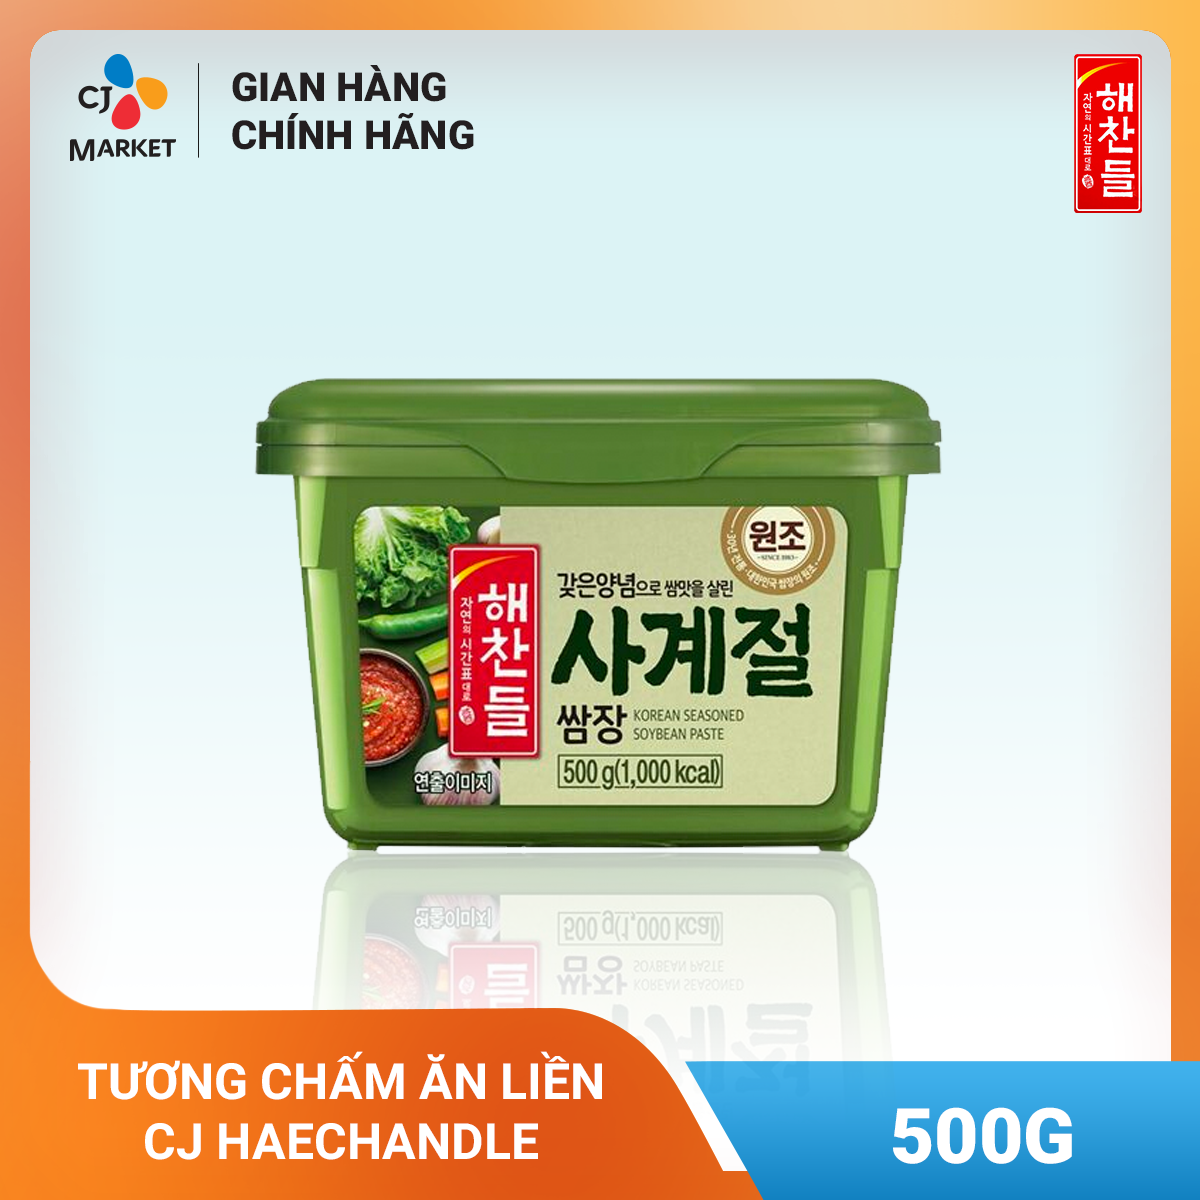 CHỈ GIAO HCM Tương chấm ăn liền CJ Haechandle 500g - Nhập khẩu từ Hàn Quốc